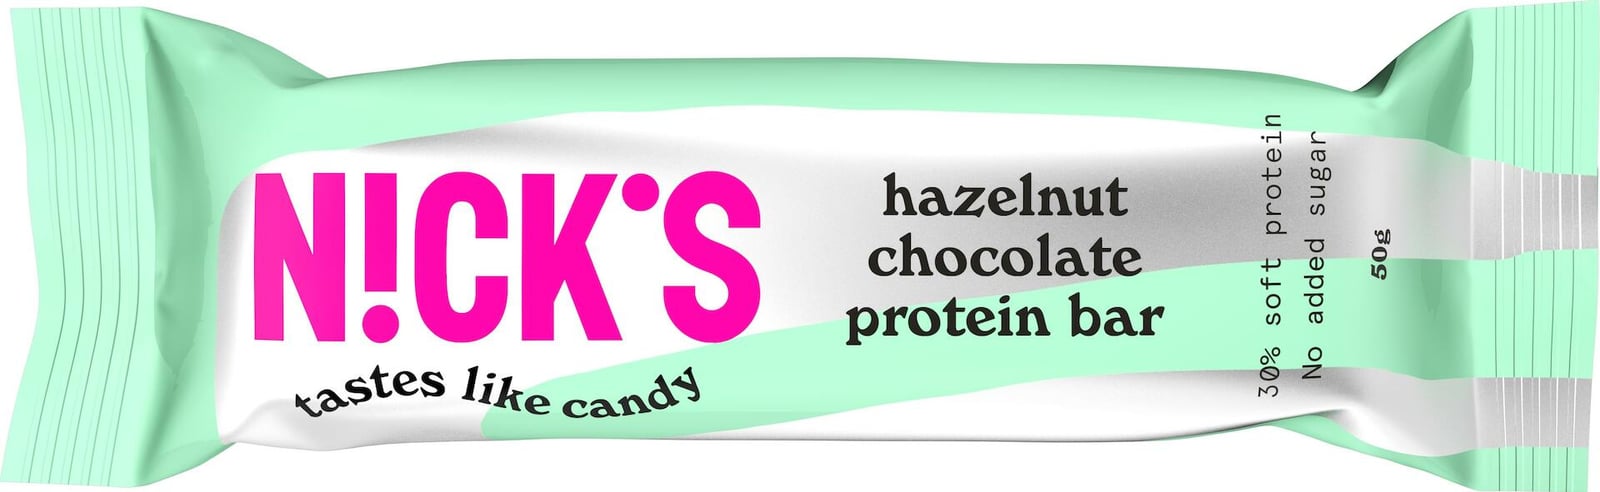 Nick's Hazelnut Chocolate Protein Bar 50g